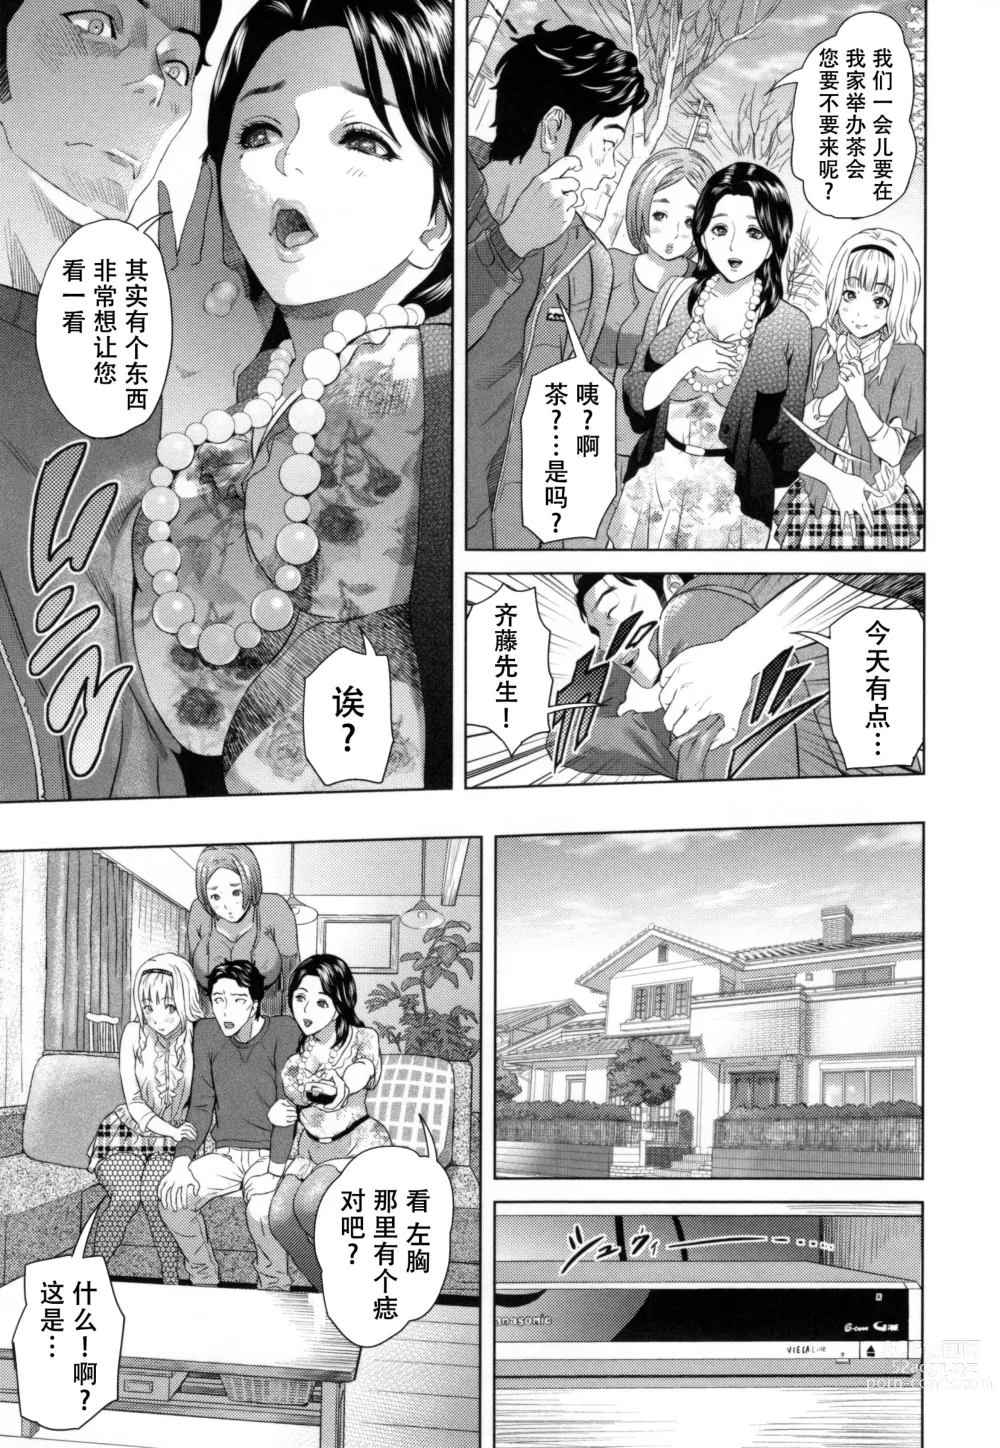 Page 198 of manga Jukuren no Wana